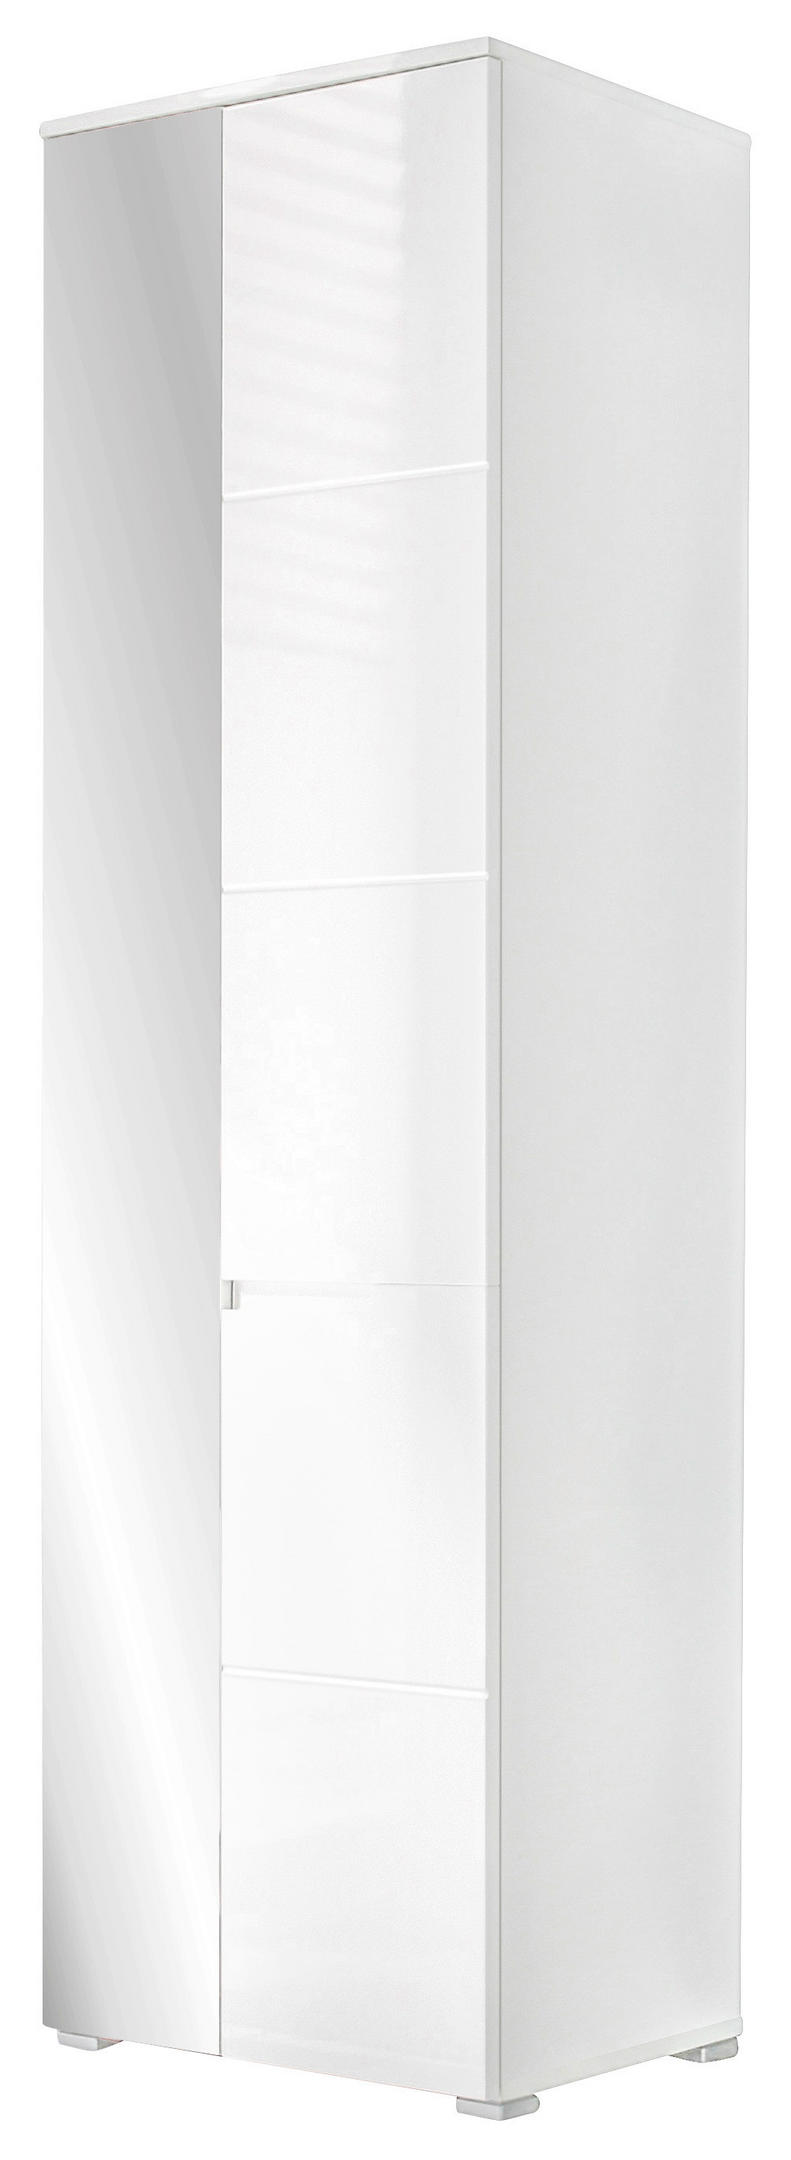 Garderobenschrank Weiß Hochglanz-Oberfläche kaufen